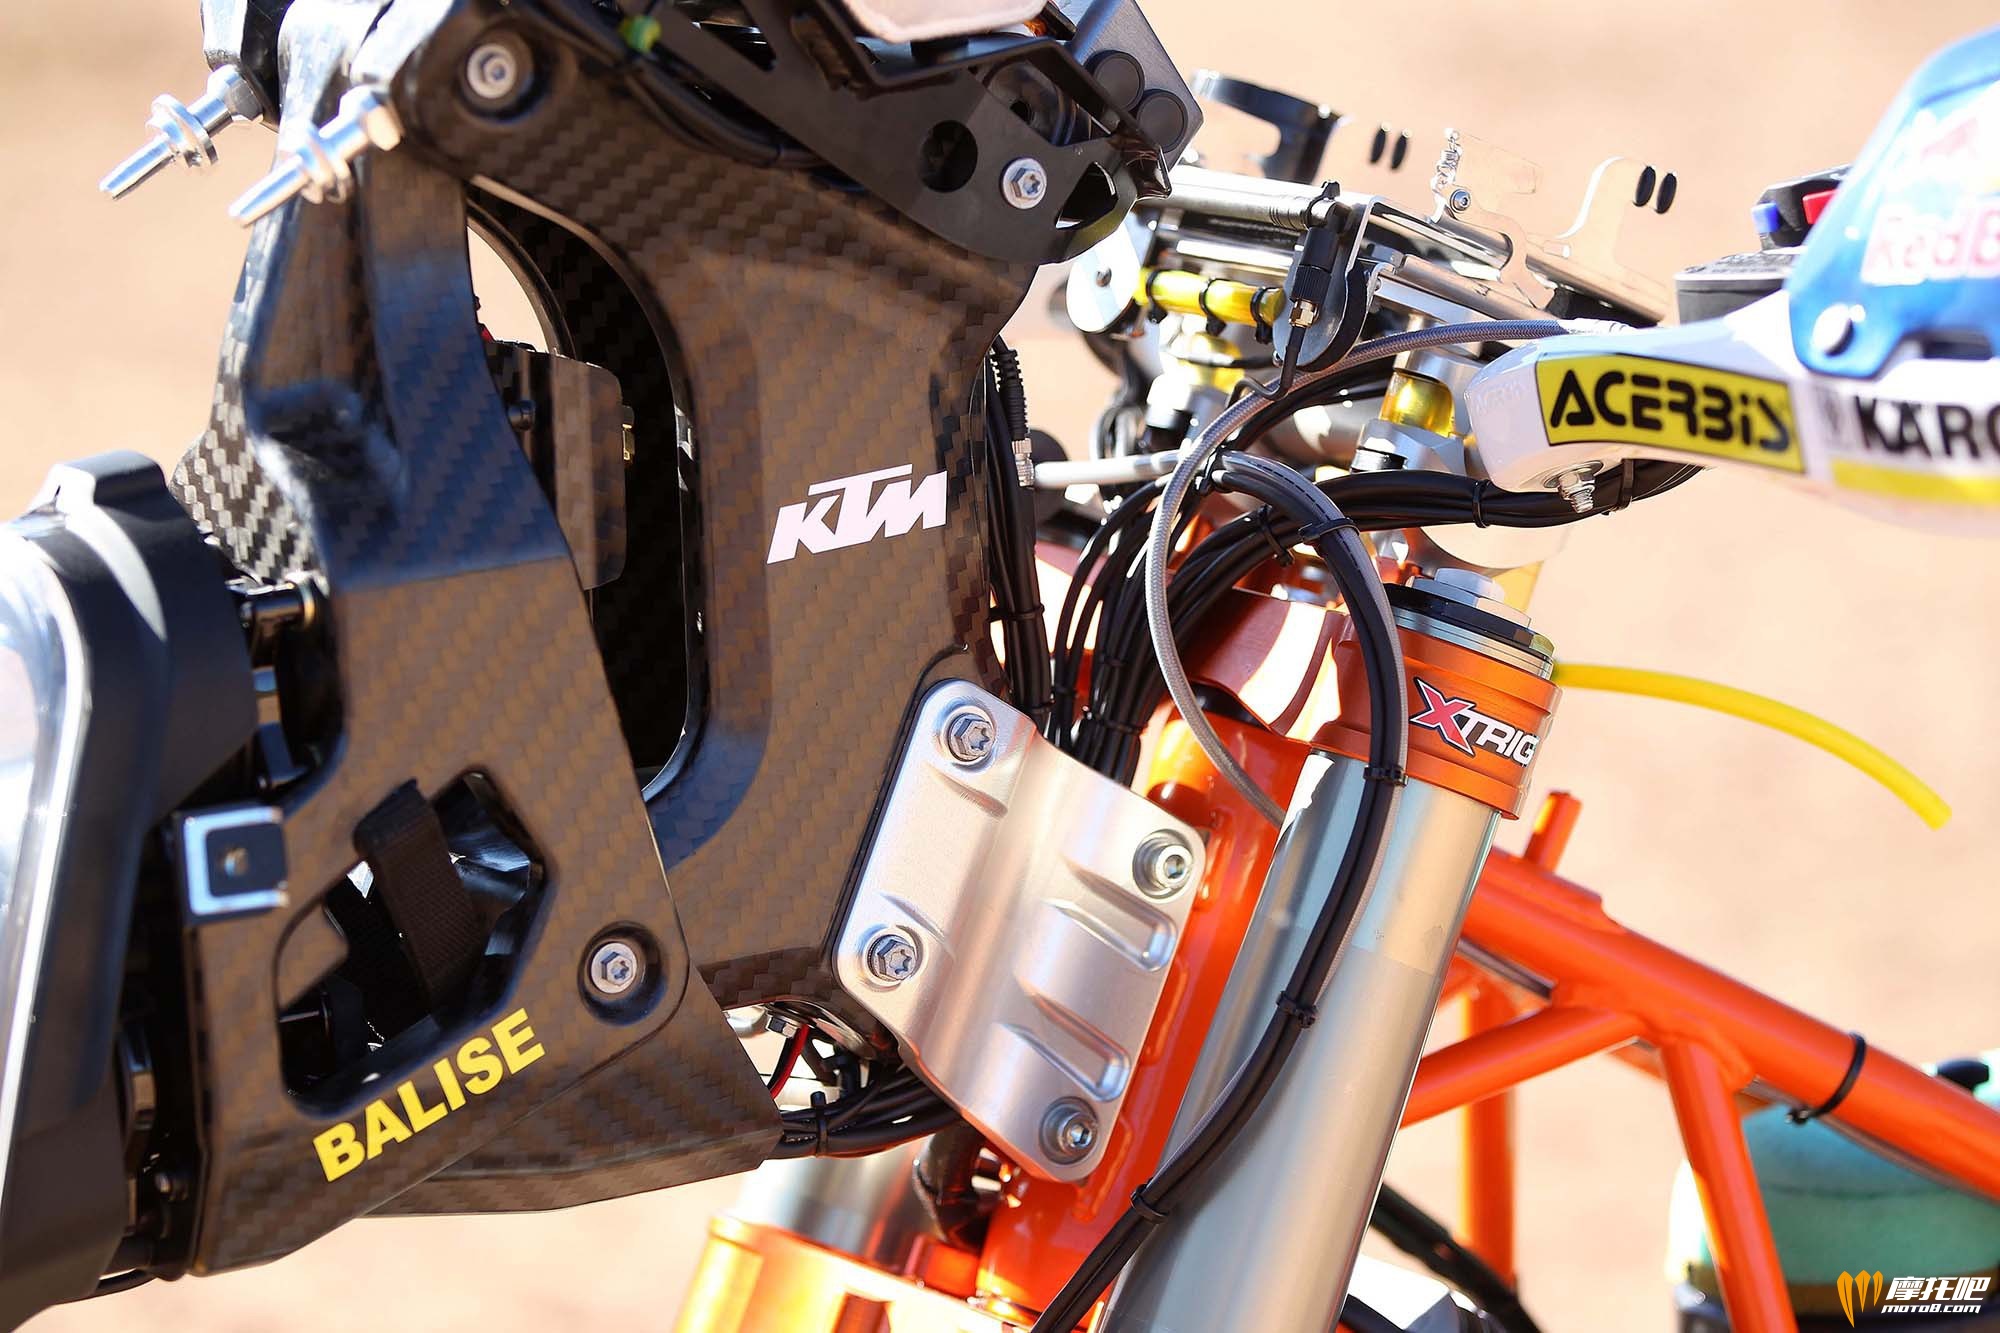 2014-KTM-450-Rally-race-bike-04.jpg